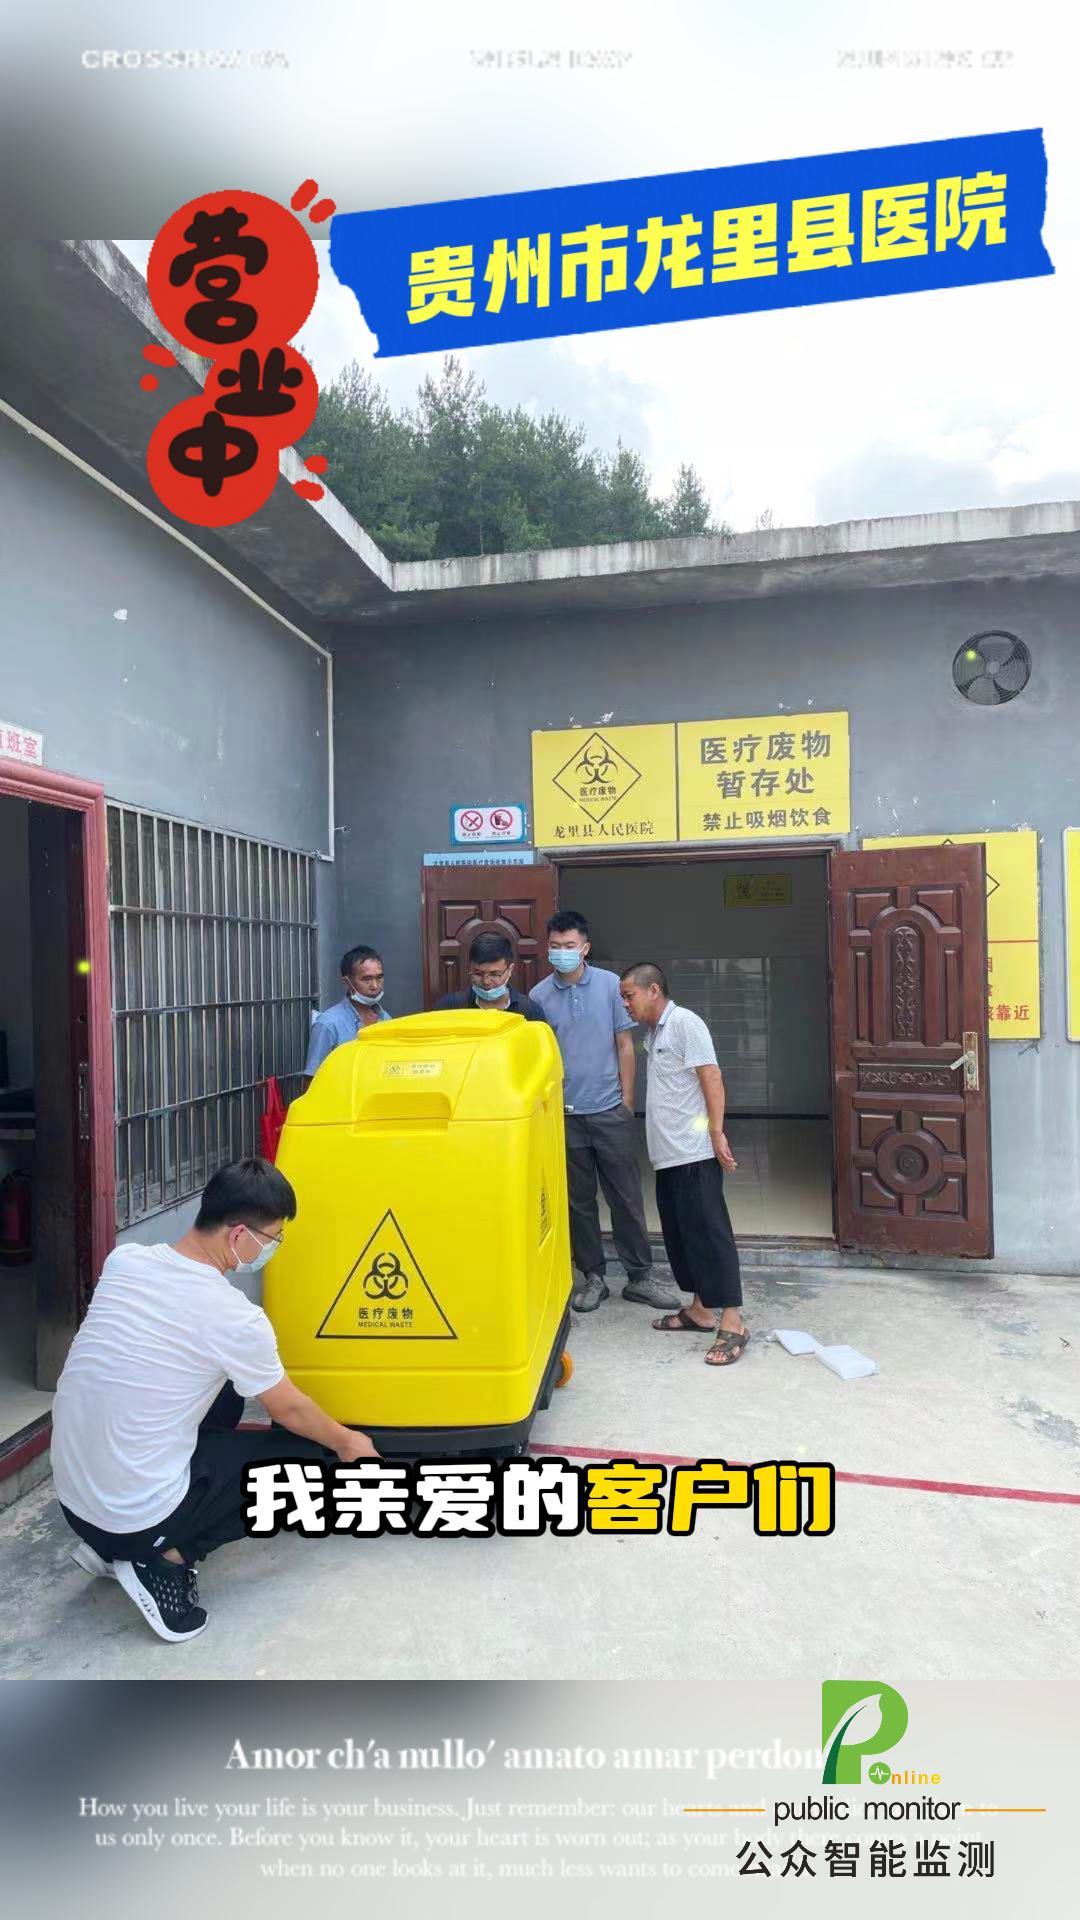 公众智能医疗废物在线监测系统助力医院规范医疗废物管理。#陕西公众智能监测#陕西公众智能科技 